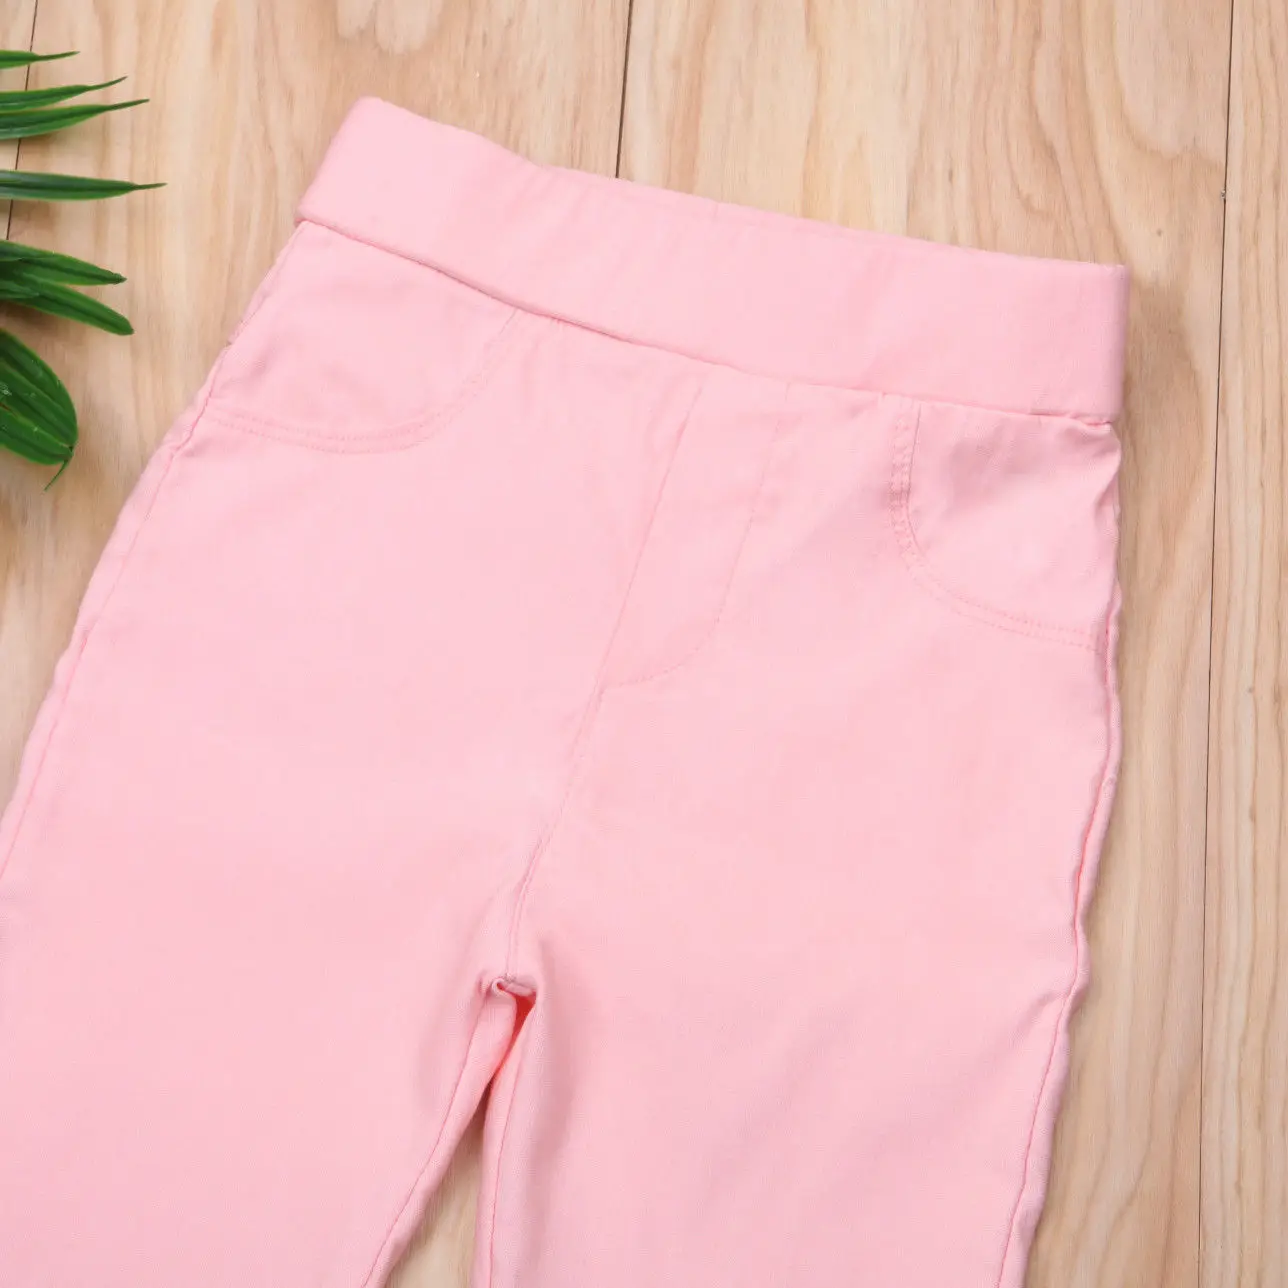 Штаны для маленьких мальчиков от 2 до 6 лет Детские Стрейчевые брюки повседневные брюки ярких цветов